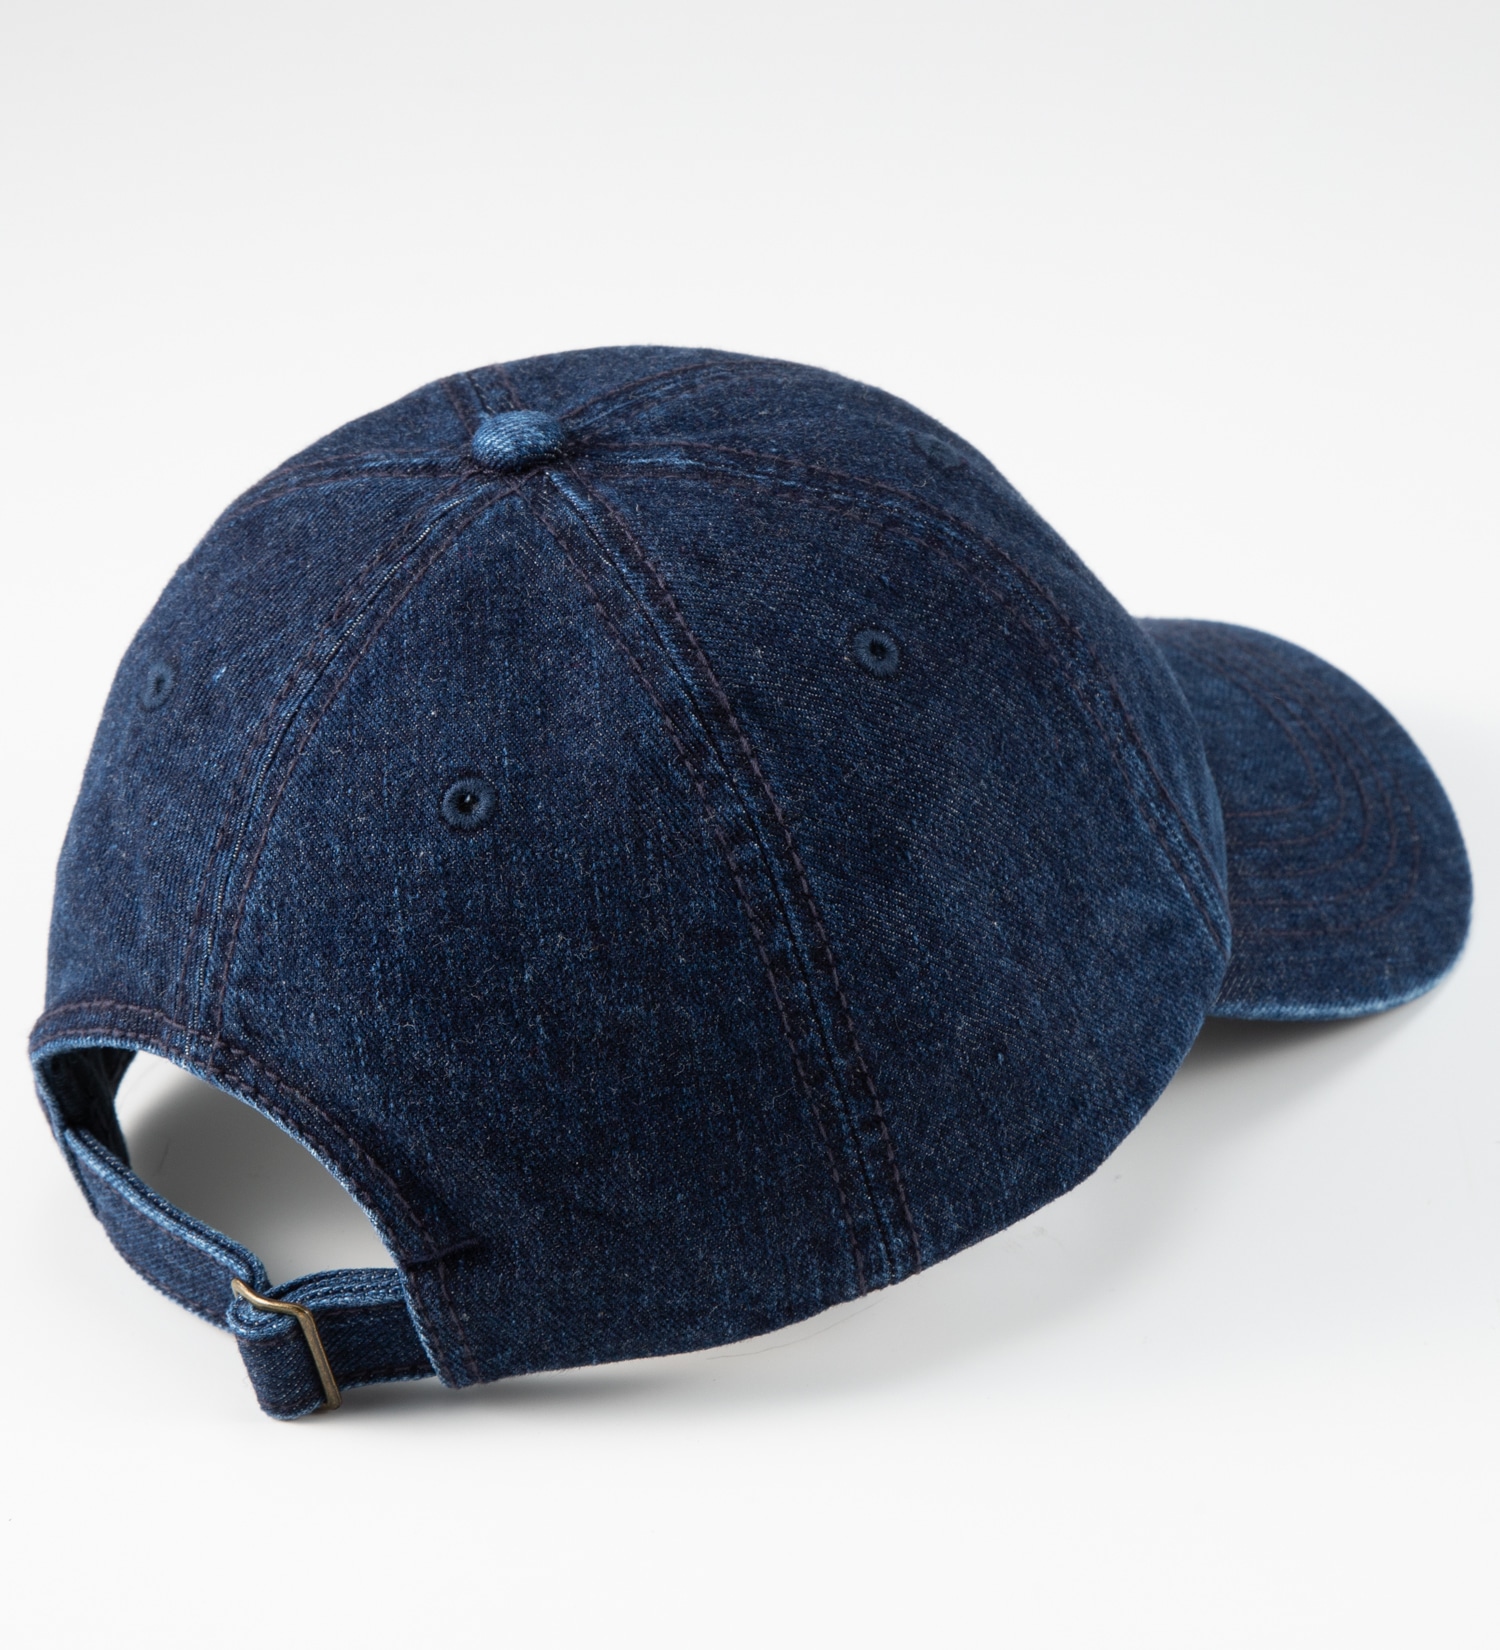 Lee(リー)のデニム ロゴキャップ|帽子/キャップ/メンズ|濃色ブルー